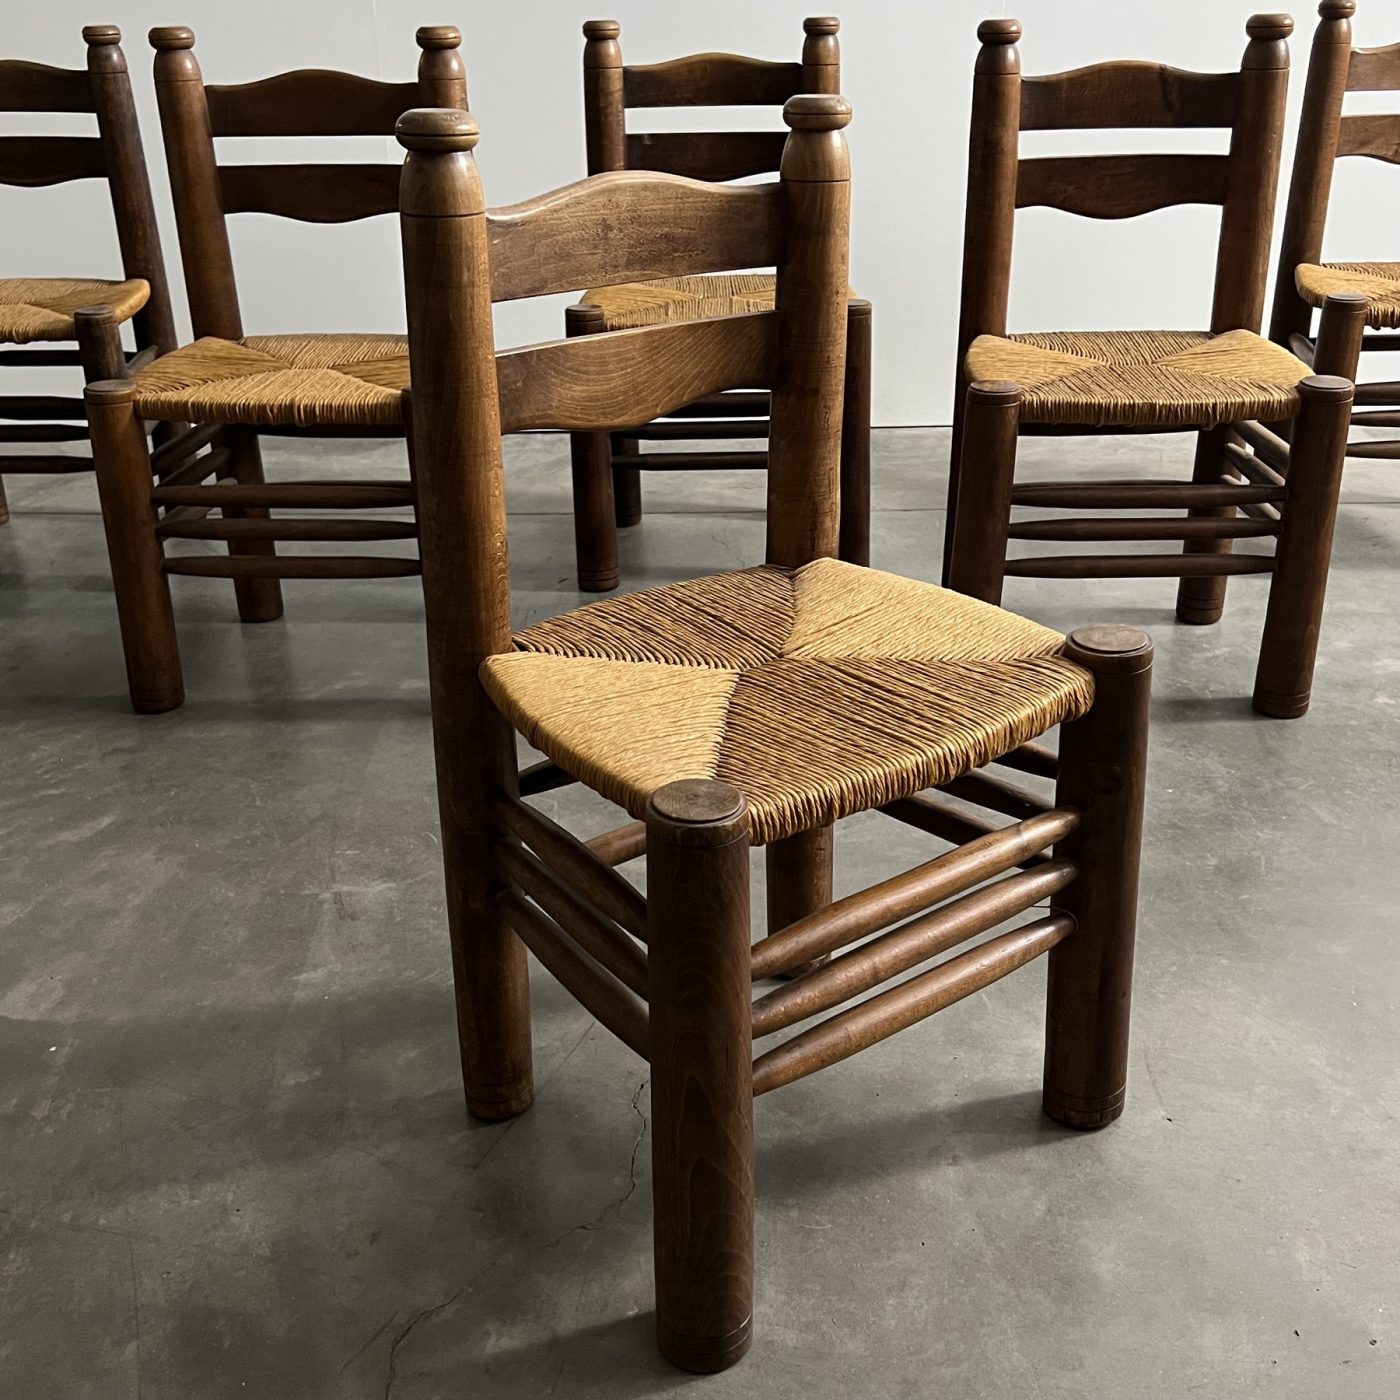 objet-vagabond-dudouyt-chairs0004